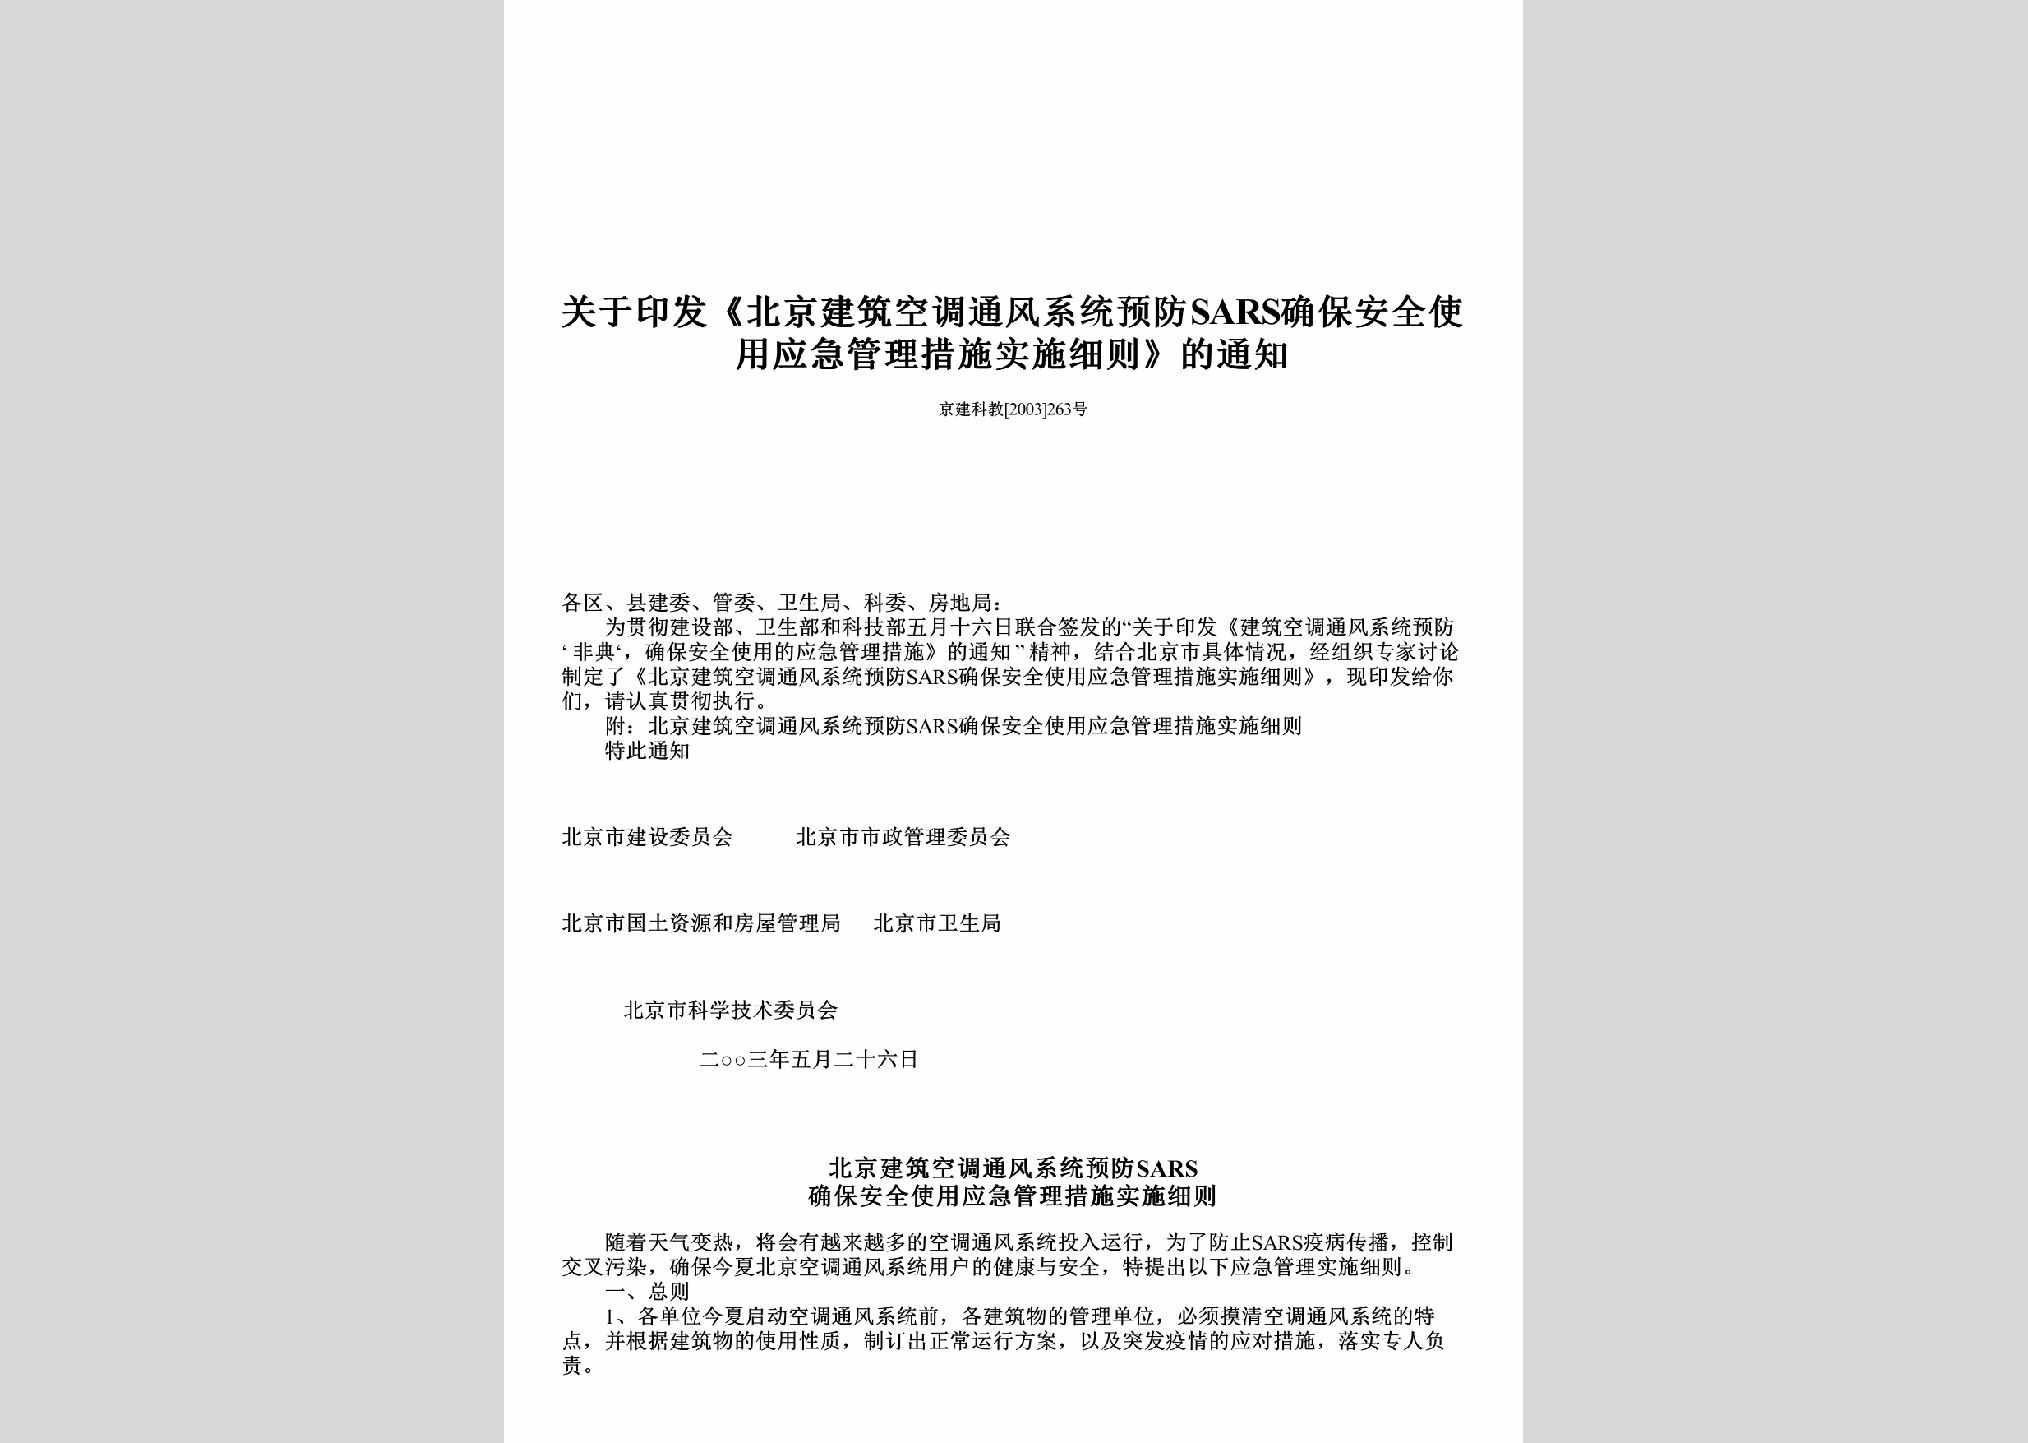 京建科教[2003]263号：关于印发《北京建筑空调通风系统预防SARS确保安全使用应急管理措施实施细则》的通知